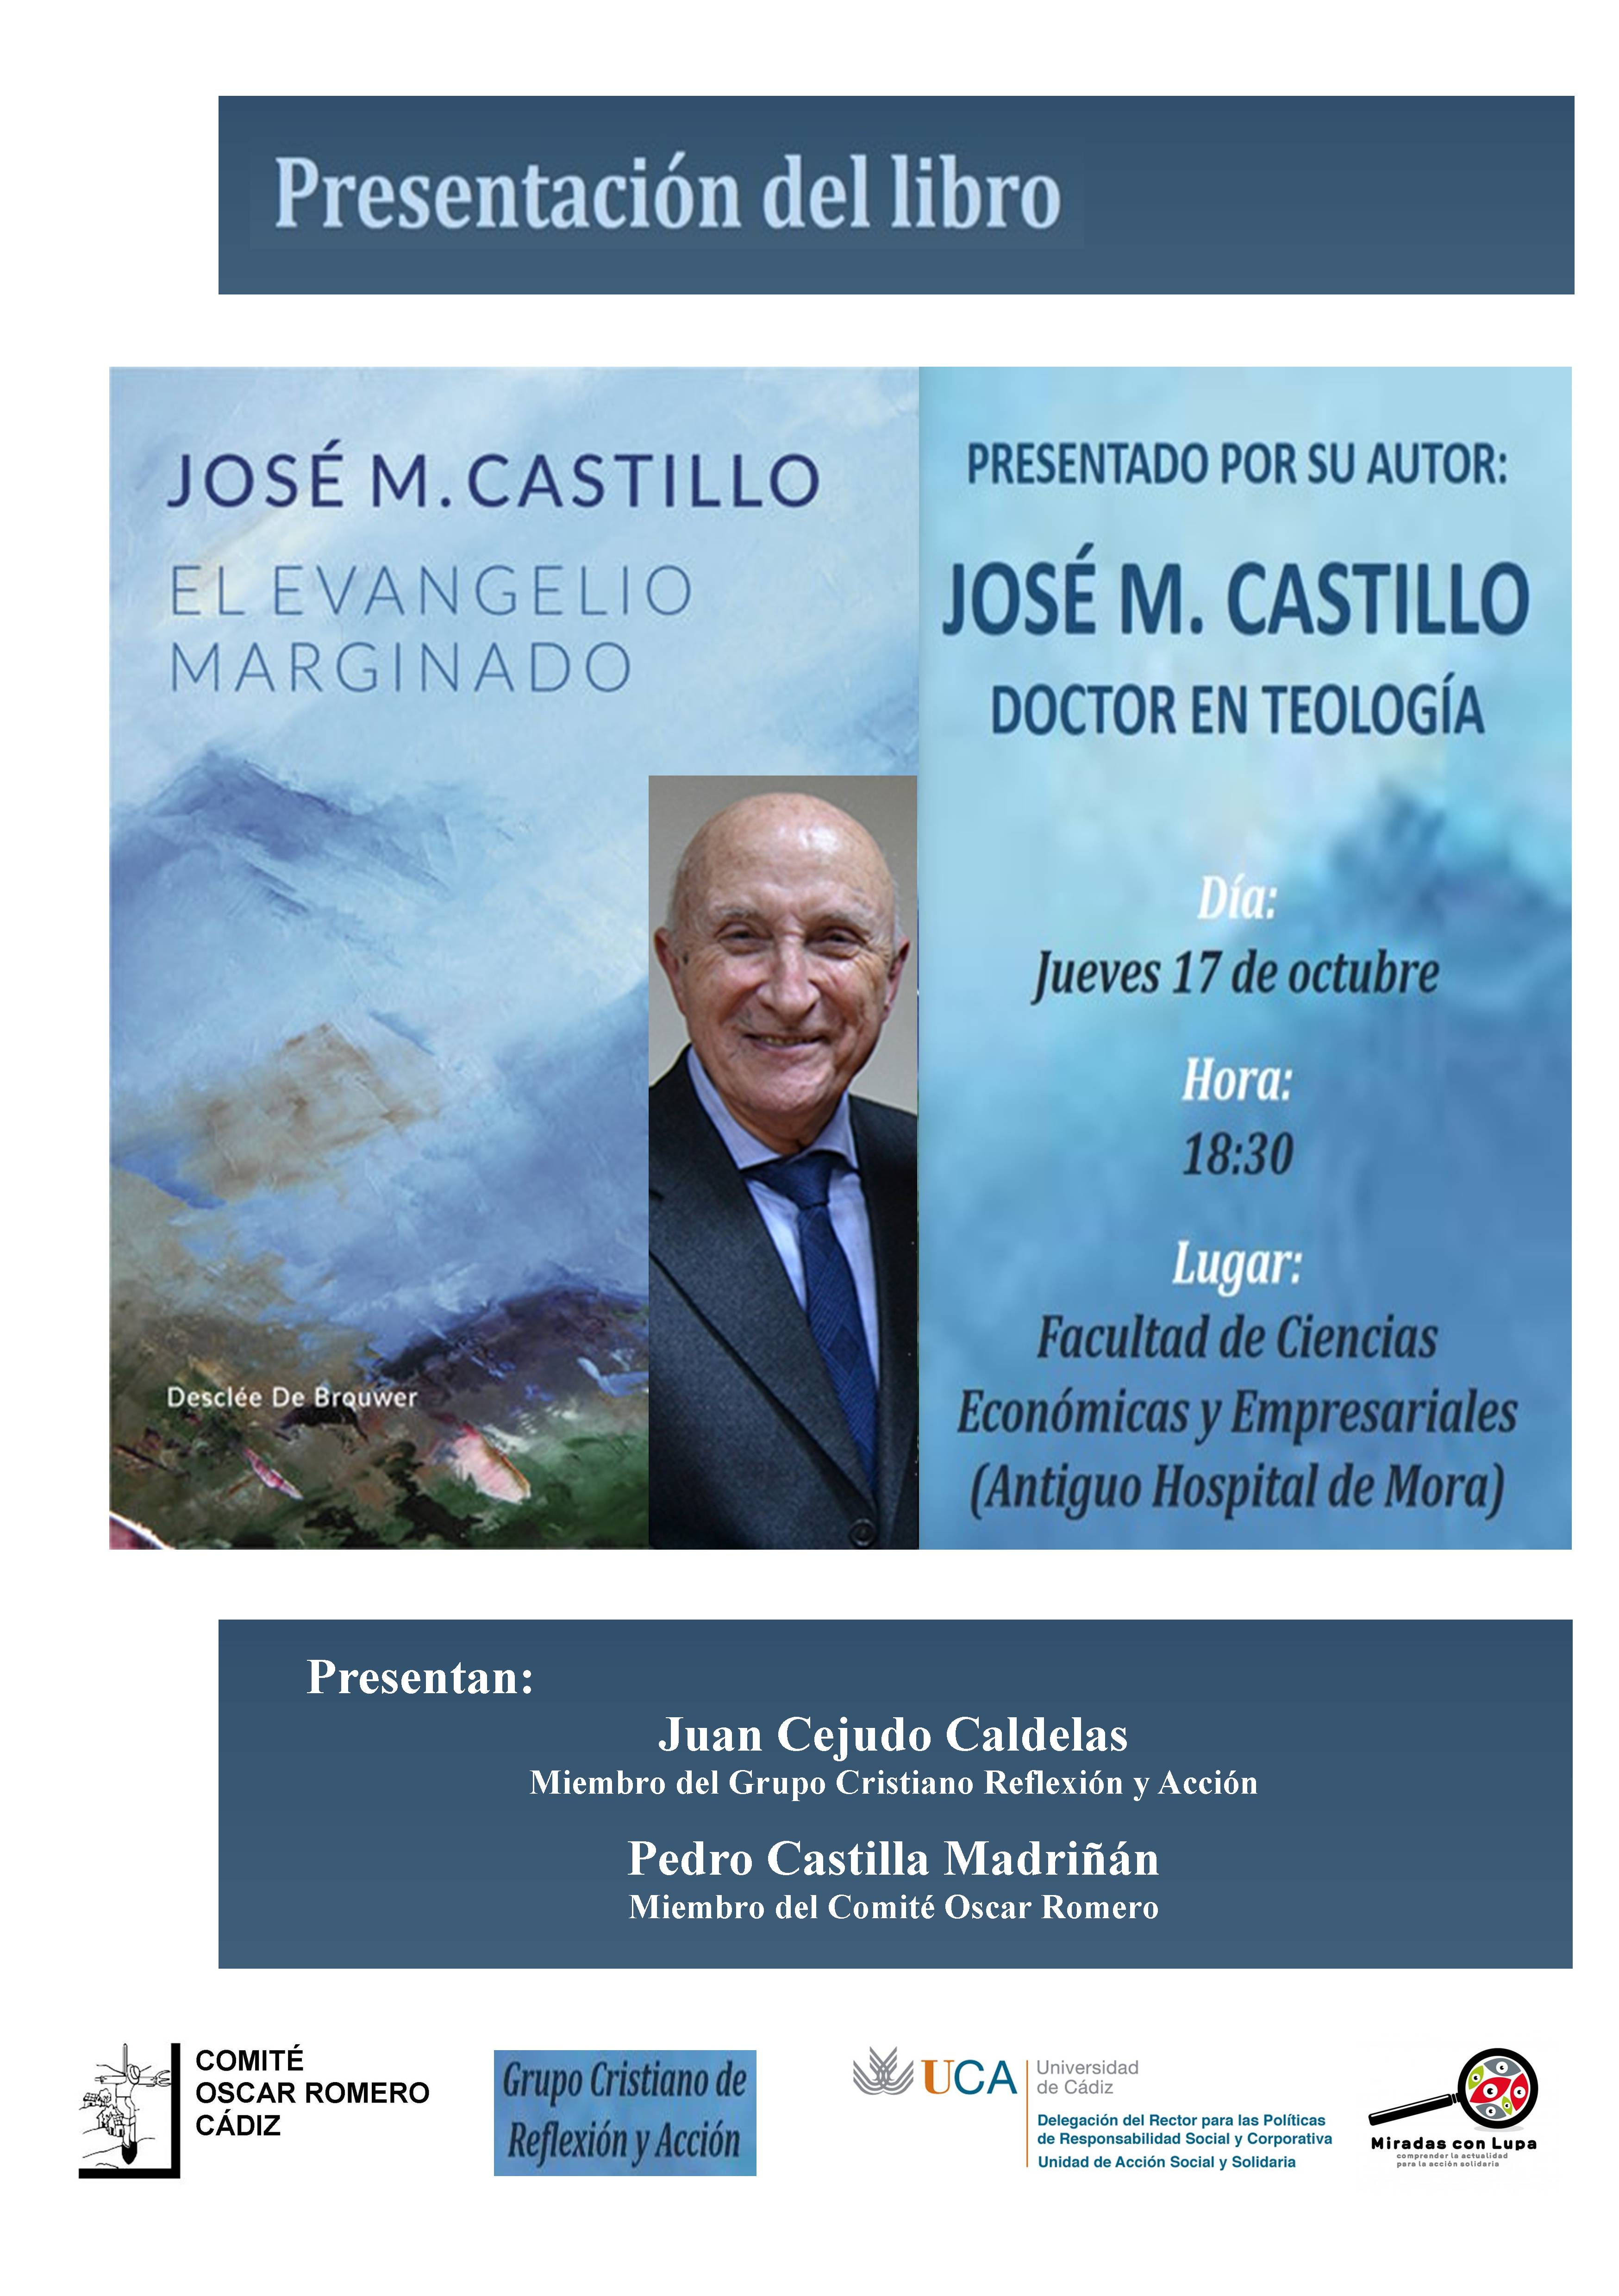 17 de octubre. 18.30h Presentación del Libro “El Evangelio Marginado” de José M. Castillo. Campus de Cádiz